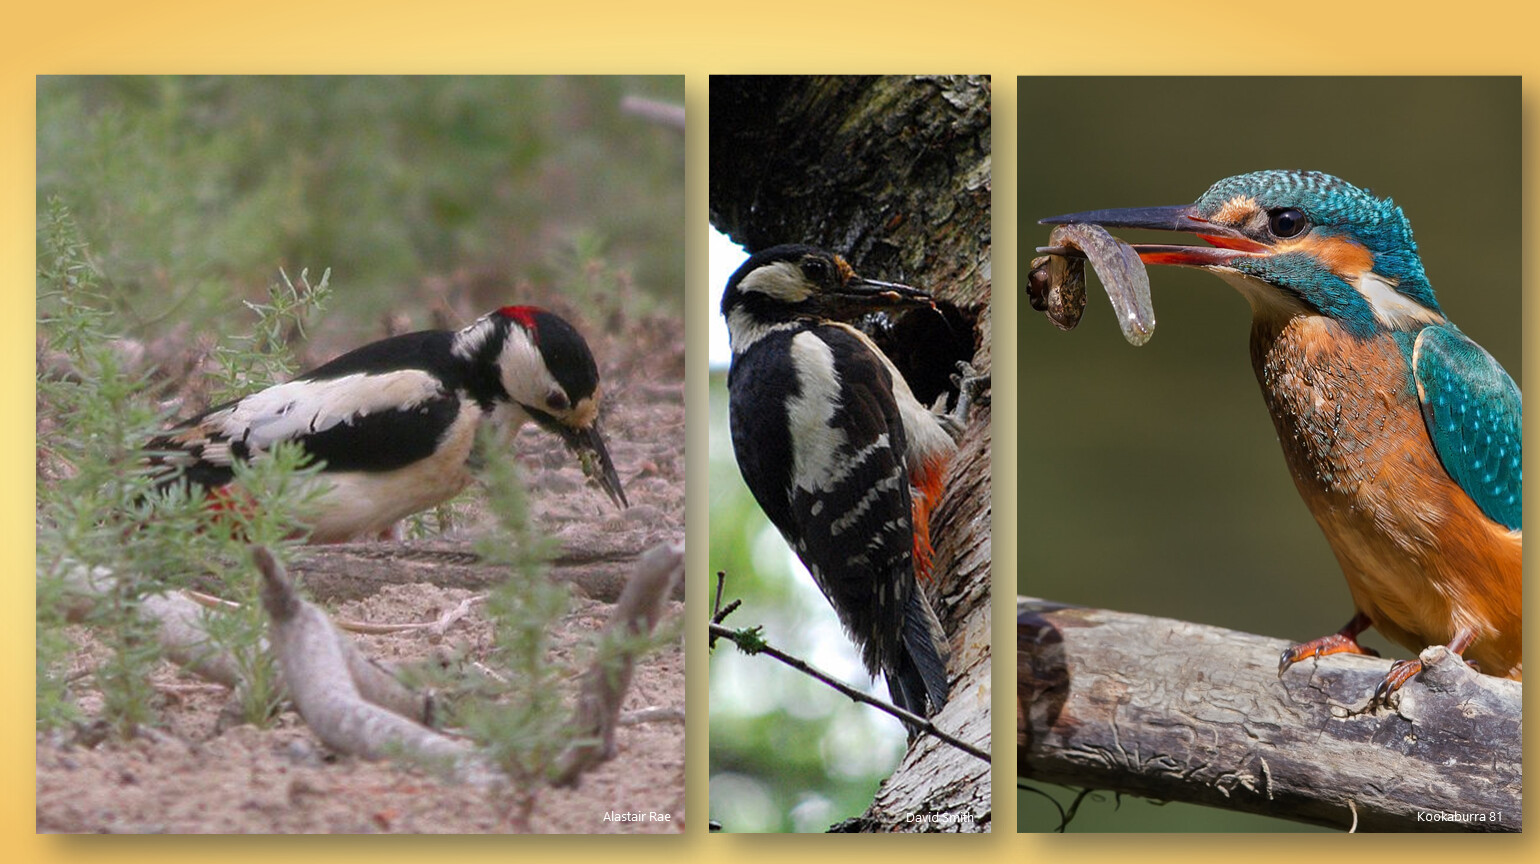 Биология 7 класс значение птиц в природе. Разнообразие птиц. Роль птиц в природе. Птицы в жизни человека и природы. Полезные птицы для человека.